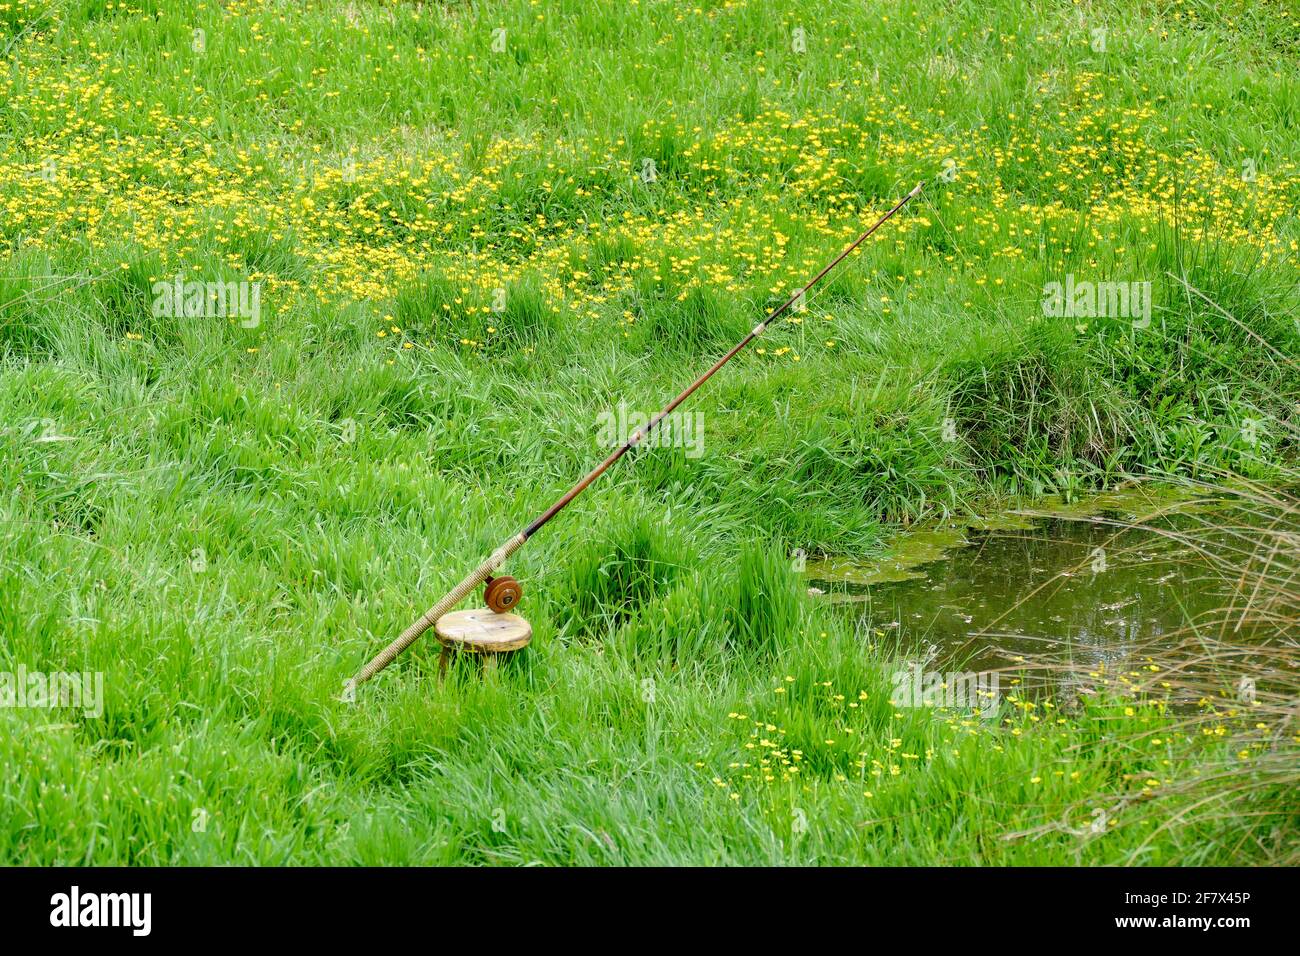 paysage riverain, y compris une canne à pêche dans une ambiance verte herbacée Banque D'Images